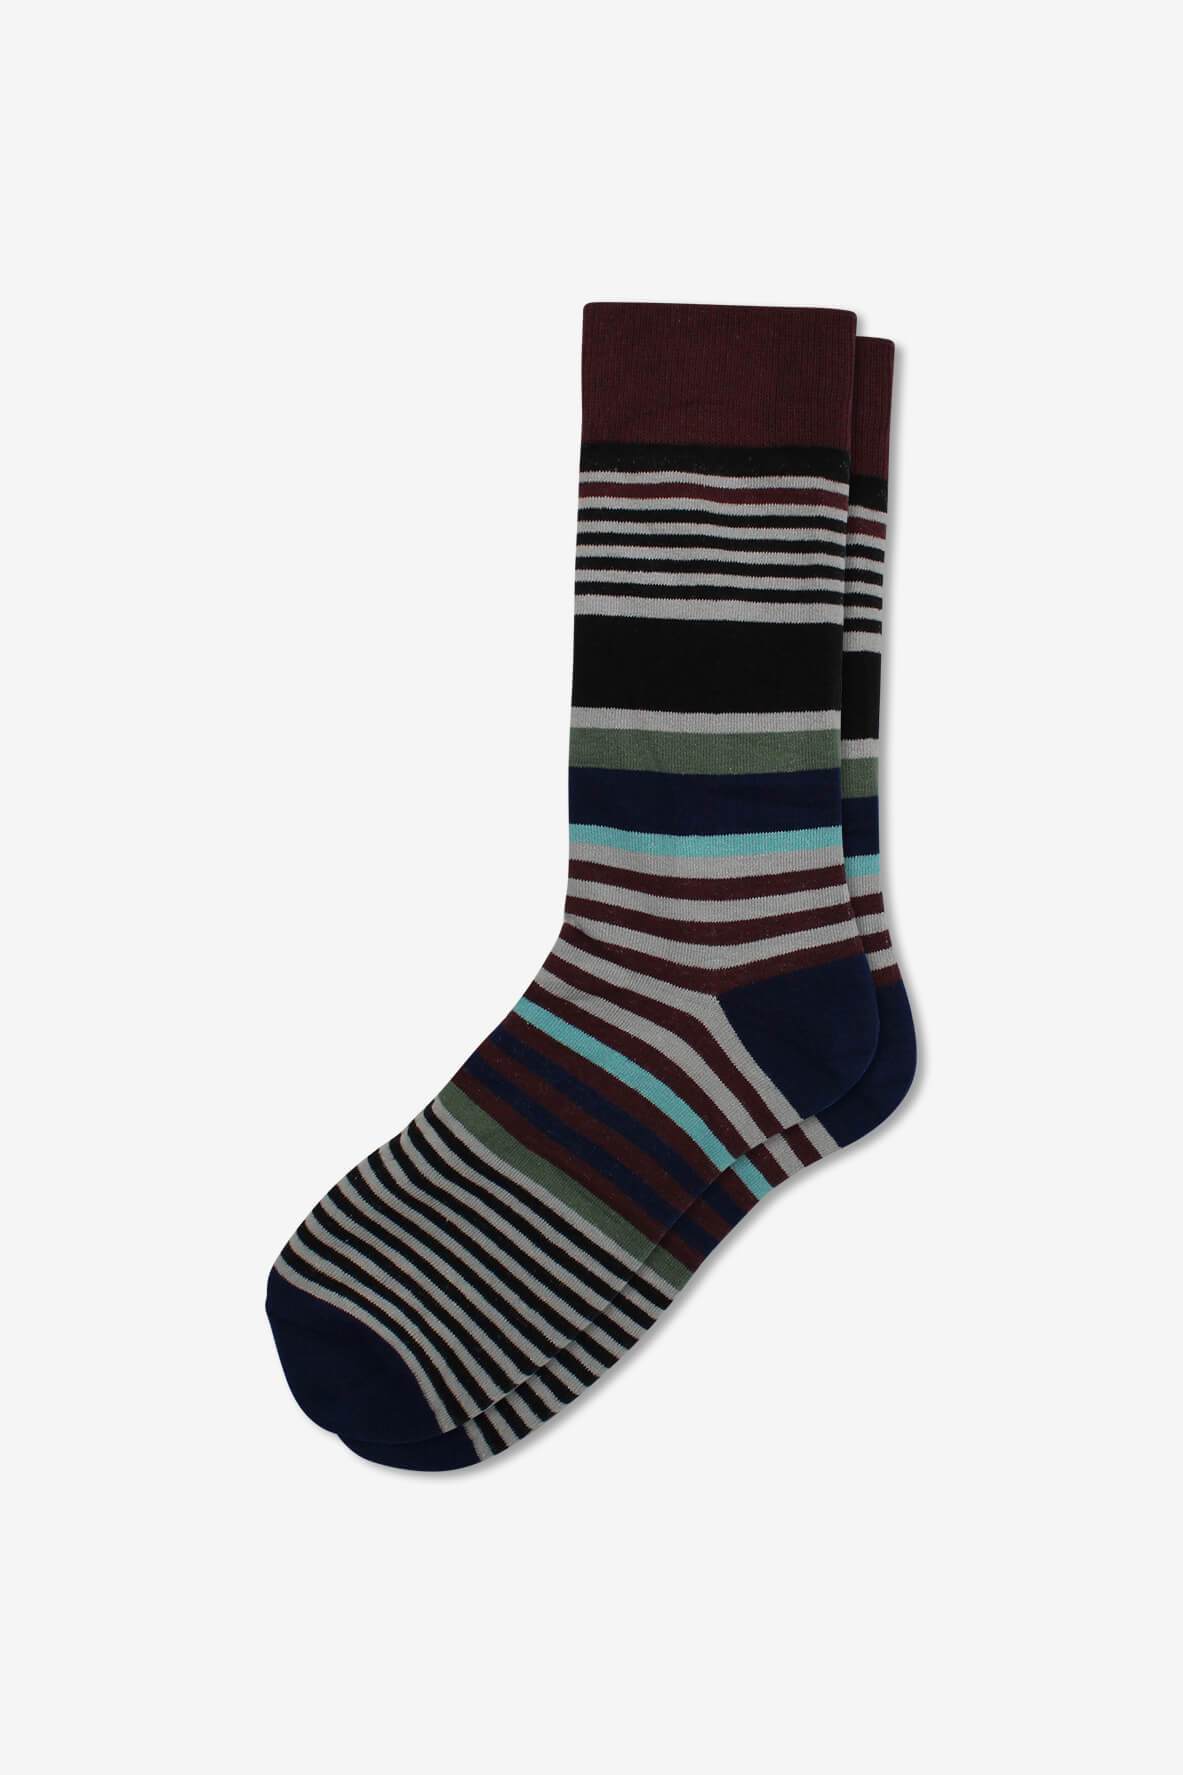 Socks IMG_5362, socks, GoTie